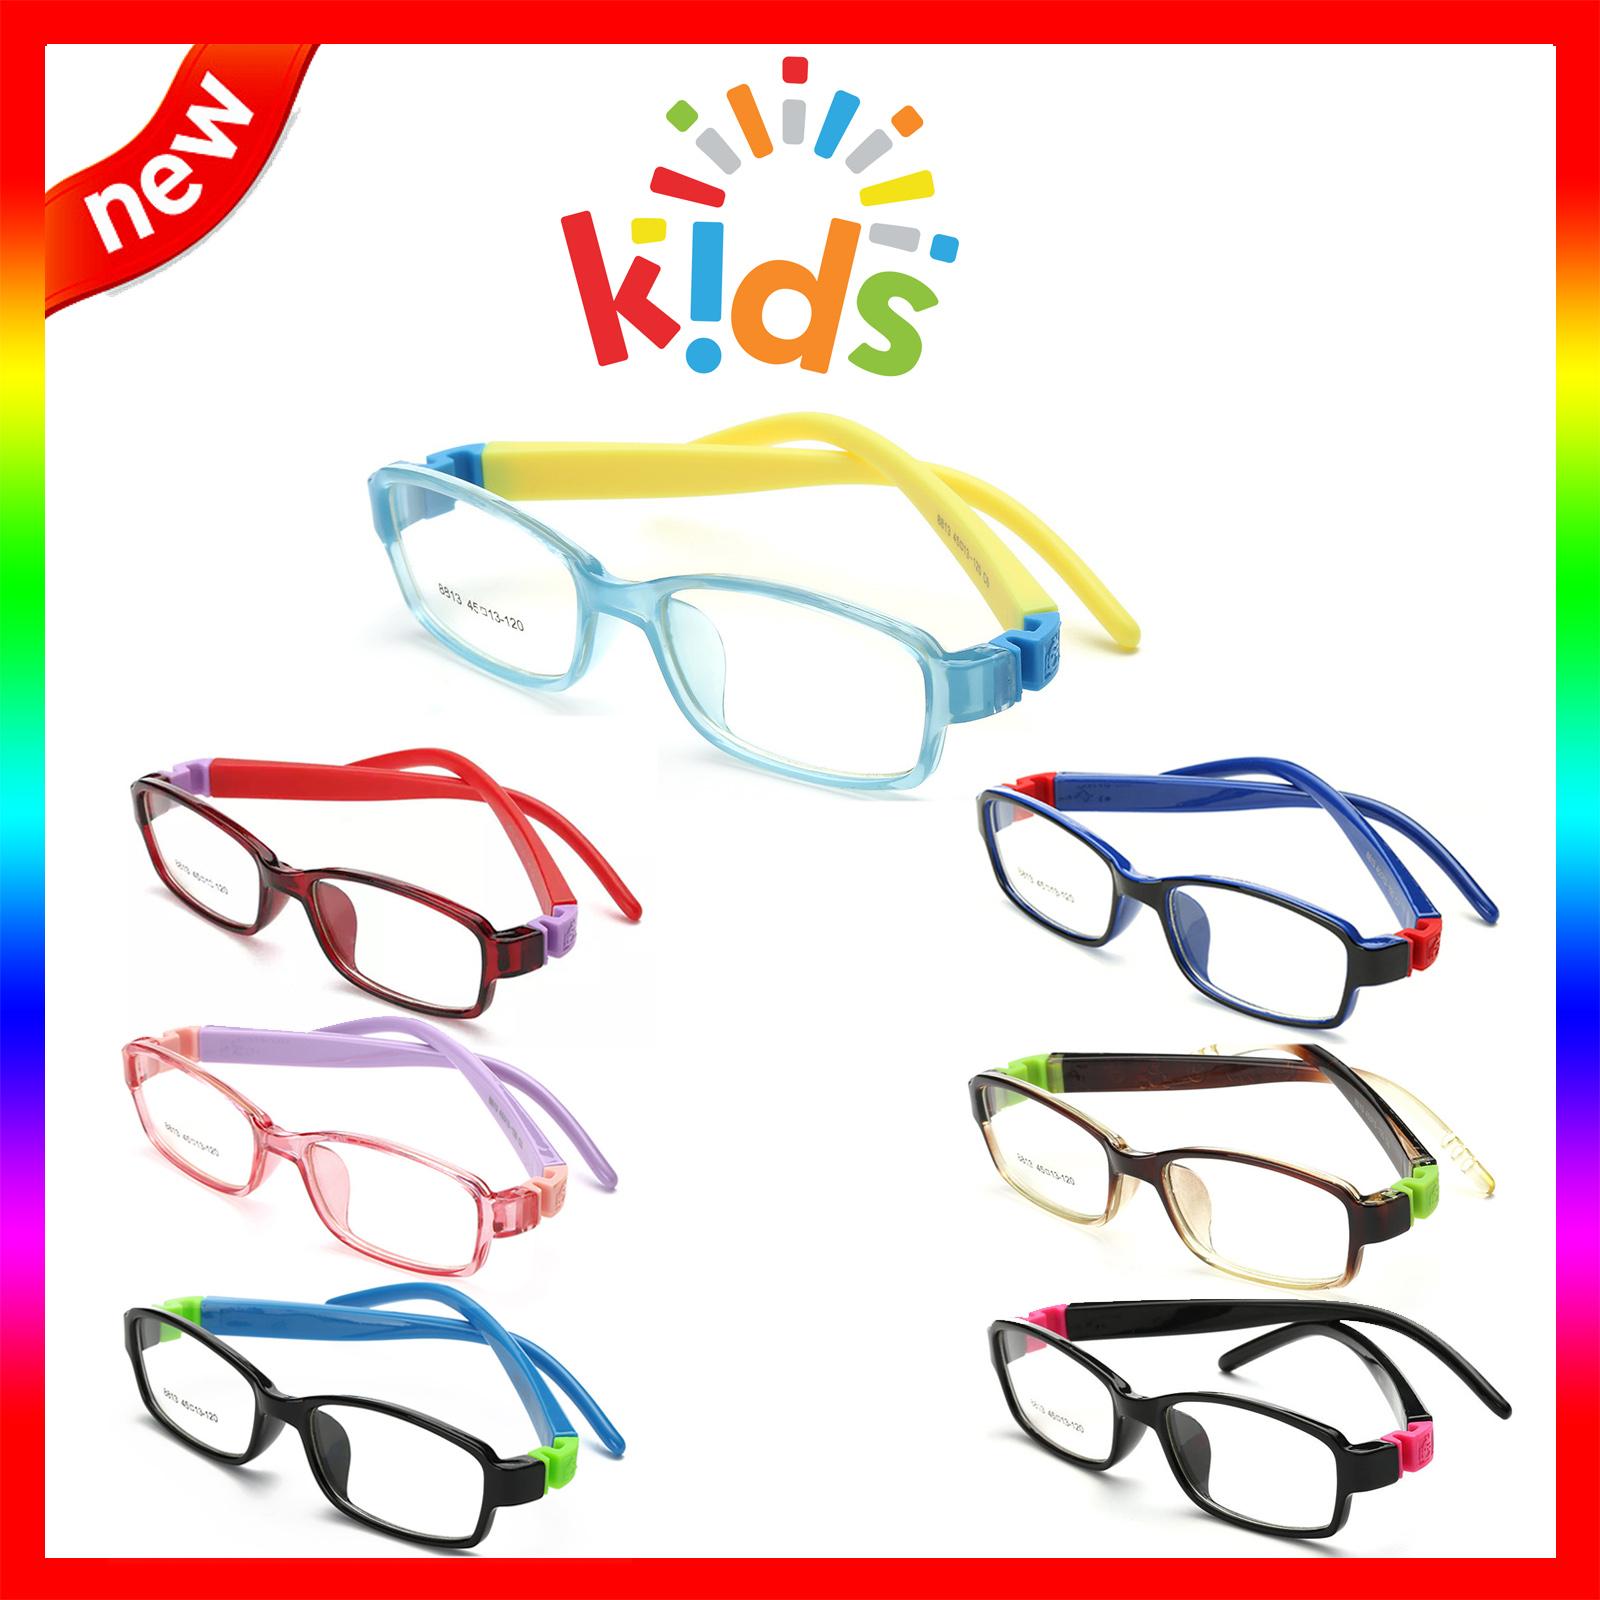 แว่นตาเกาหลีเด็ก Fashion Korea Children แว่นตาเด็ก รุ่น 8813 กรอบแว่นตาเด็ก Rectangle ทรงสี่เหลี่ยมผืนผ้า Eyeglass baby frame ( สำหรับตัดเลนส์ ) วัสดุ PC เบา ขาข้อต่อ Kid leg joints Plastic Grade A material Eyewear Top Glasses